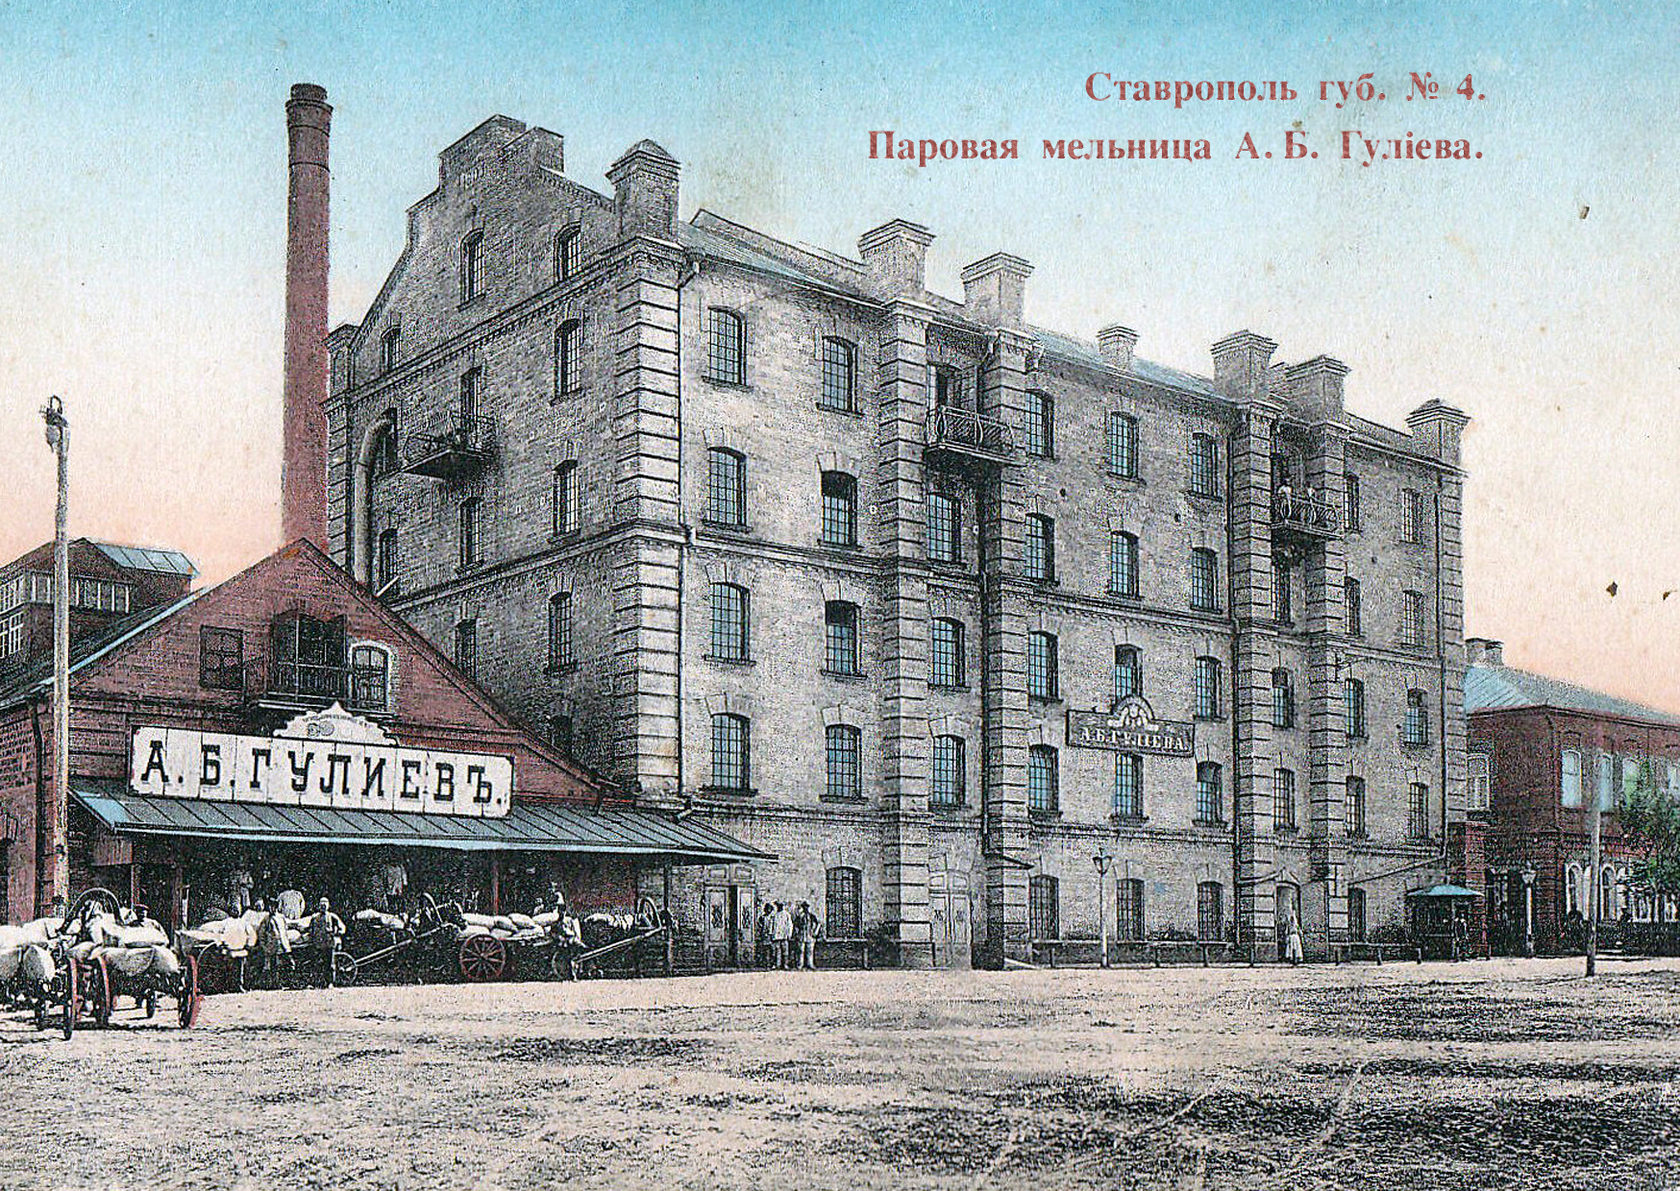 картинка почтовая ретро открытка дореволюционного времени с изображением мельницы Гулиева города Ставрополя